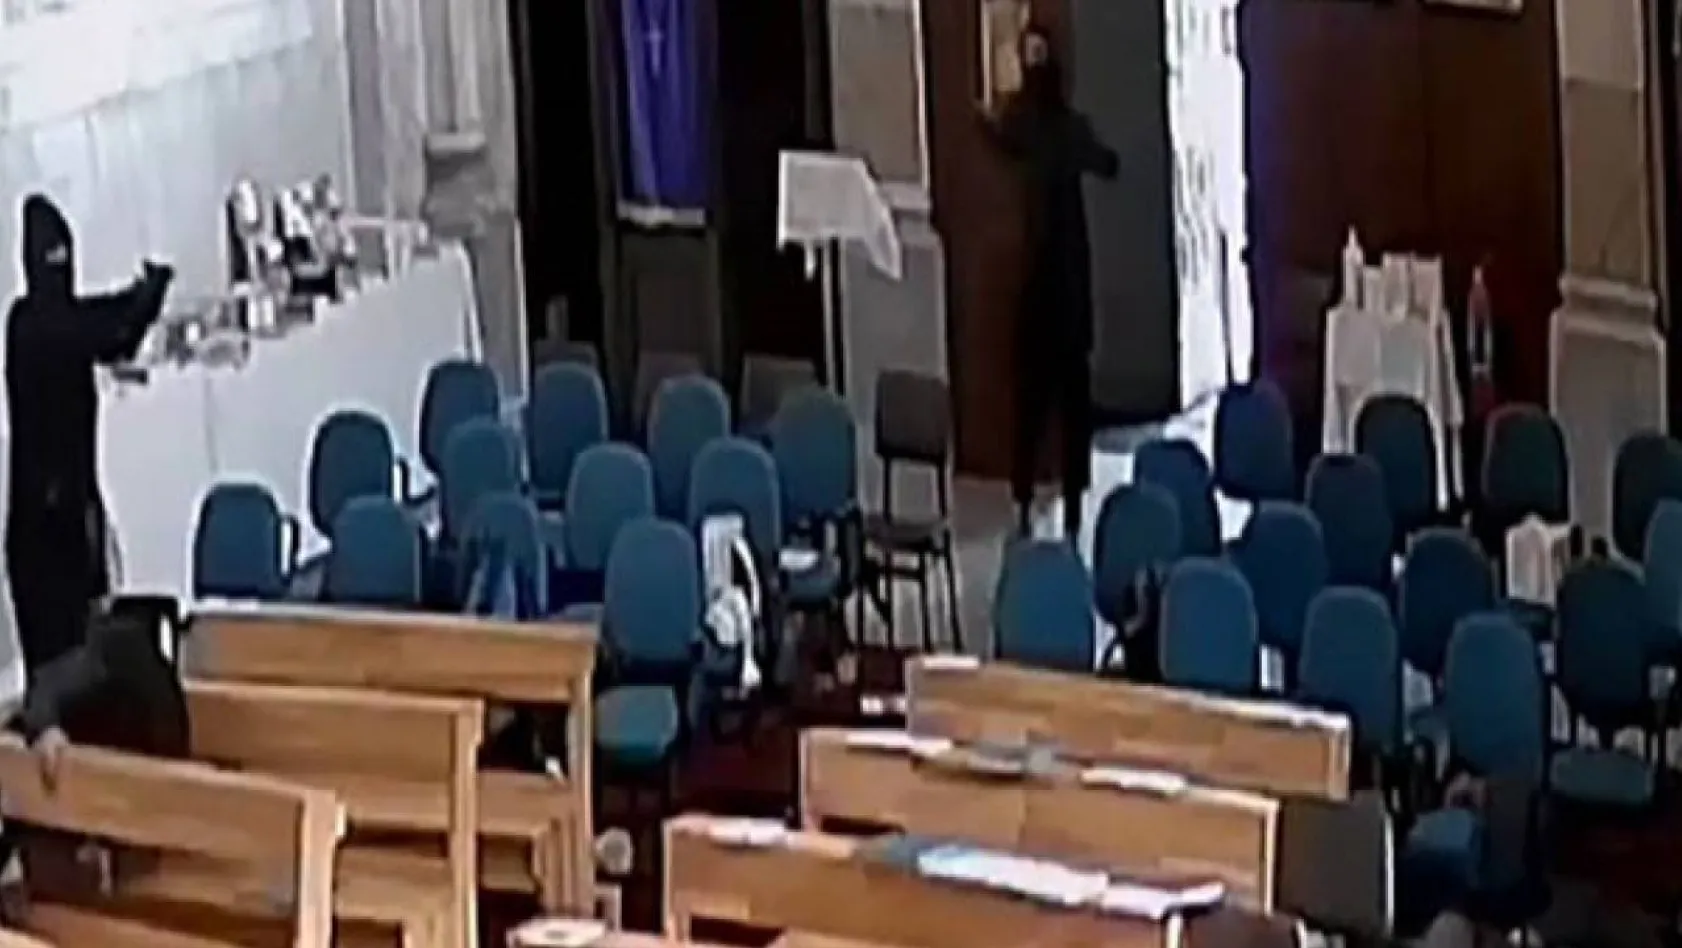 Sarıyer'de Santa Maria Kilisesi'nde yaşanan silahlı saldırı güvenlik kamerasına yansıdı. Görüntülerde ayin sırasında kiliseye giren iki kişi, içeride ateş ediyor. Şahıslar saldırının ardından kiliseden kaçarak uzaklaşıyor.